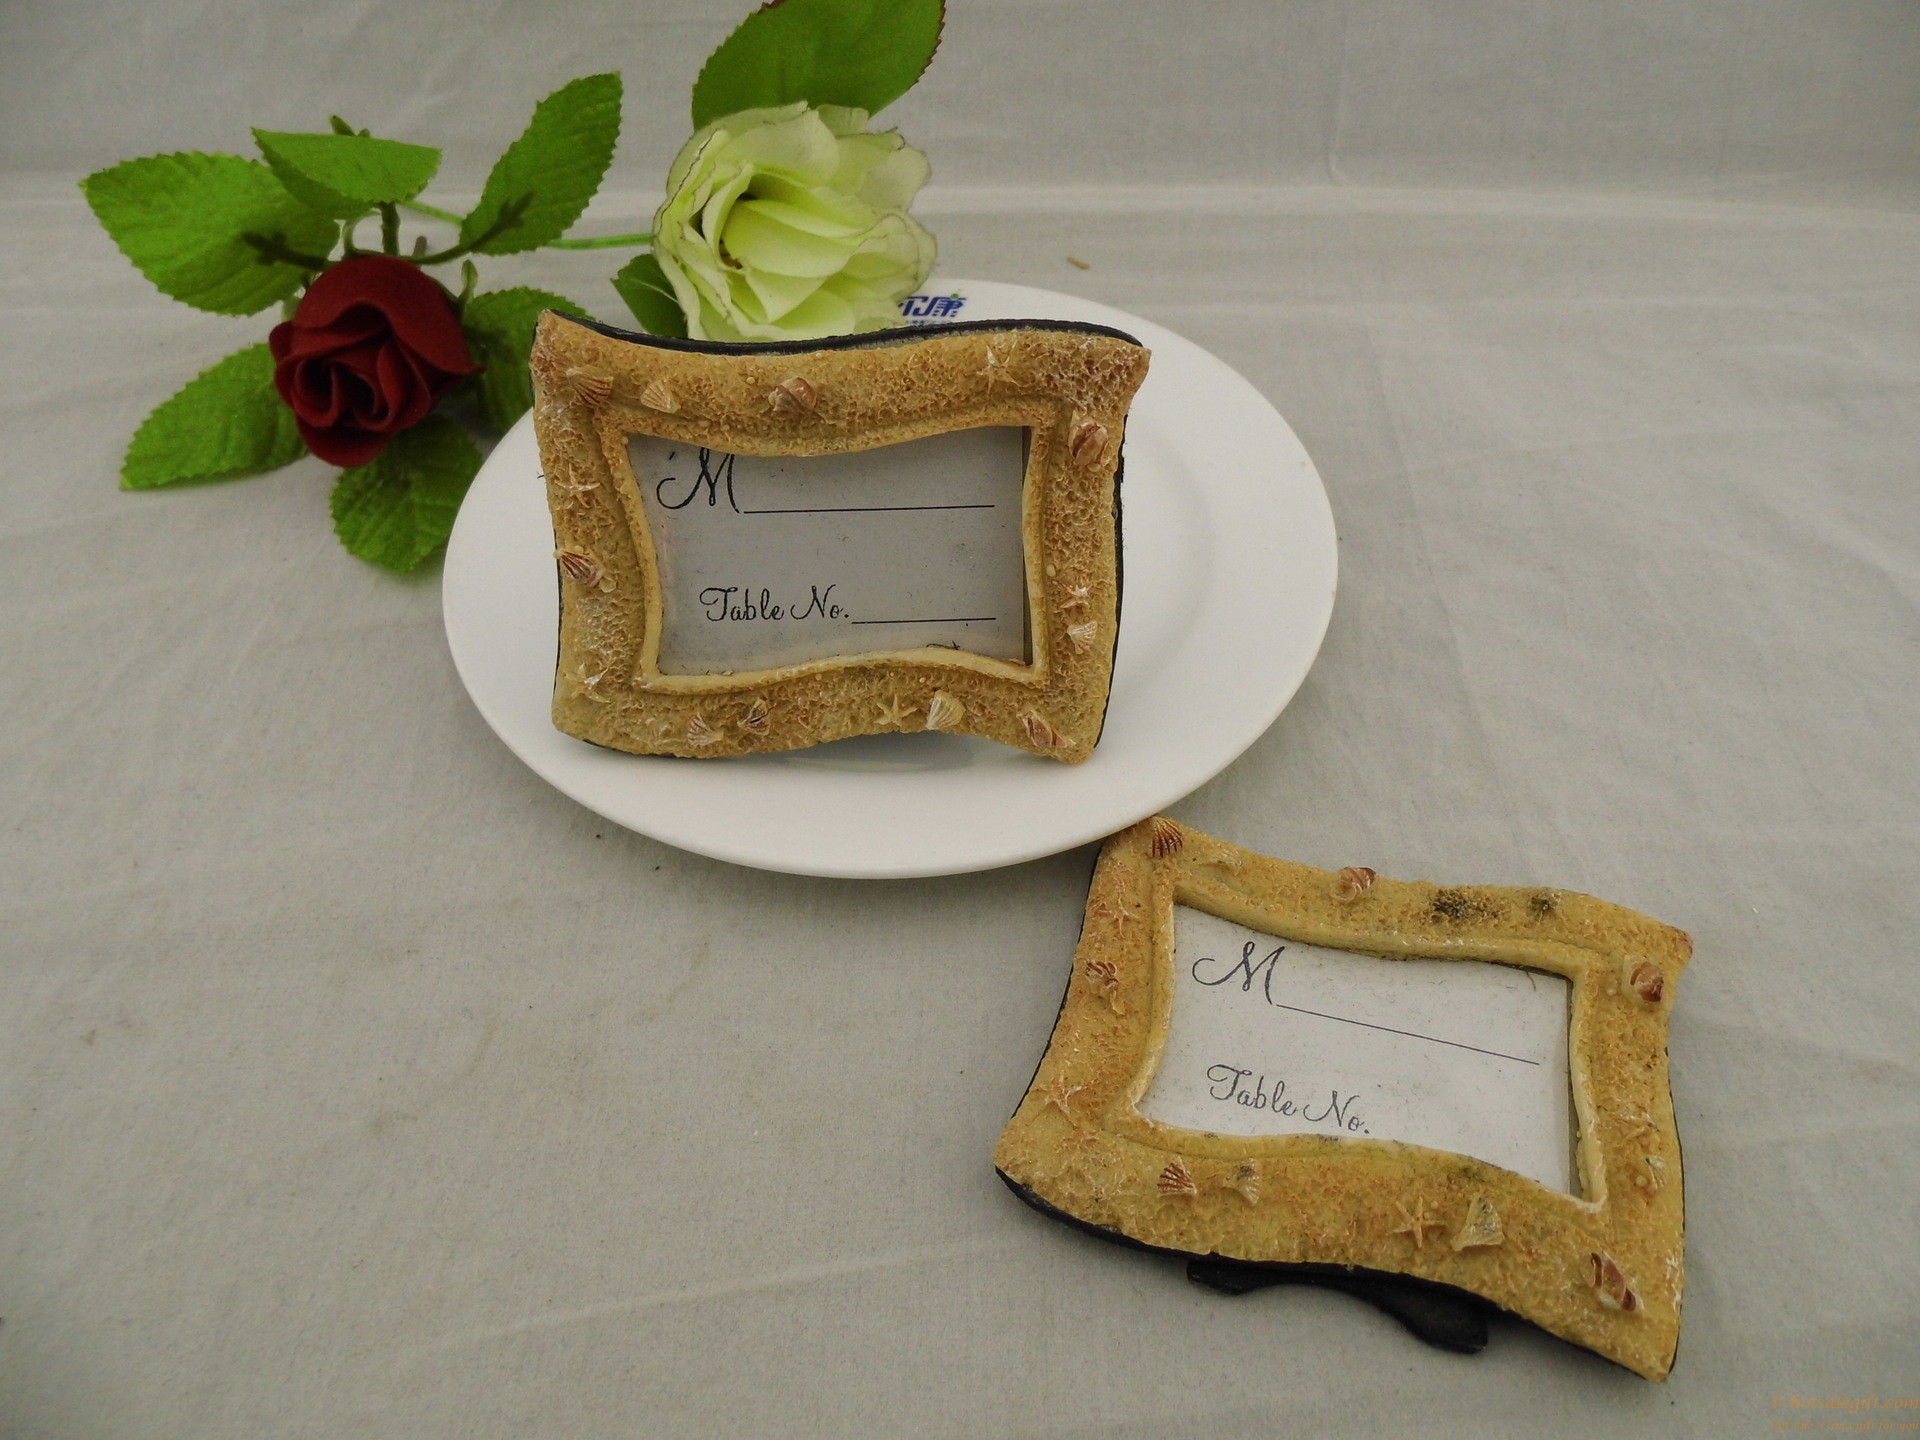 hotsalegift beachthemed photo frame resin place card holder favor wedding 3